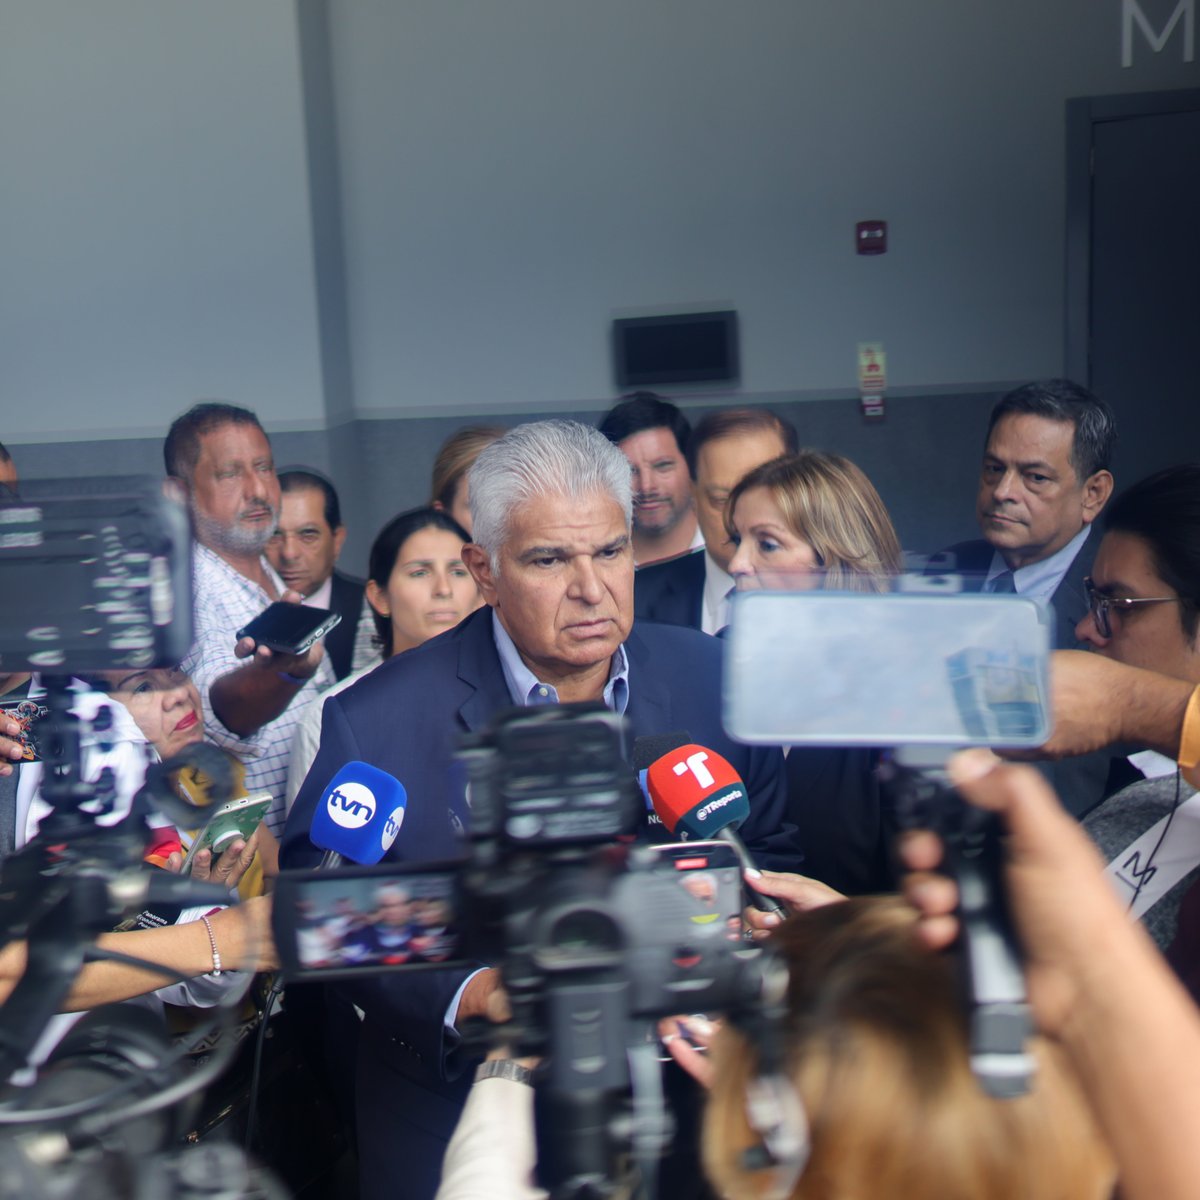 OEA reconoce a Mulino como candidato presidencial La Organización de Estados Americanos (OEA) manifestó hoy miércoles que reconoce a José Raúl Mulino, por los partidos Realizando Metas y Alianza, como candidato presidencial en firme dentro del actual proceso electoral de Panamá